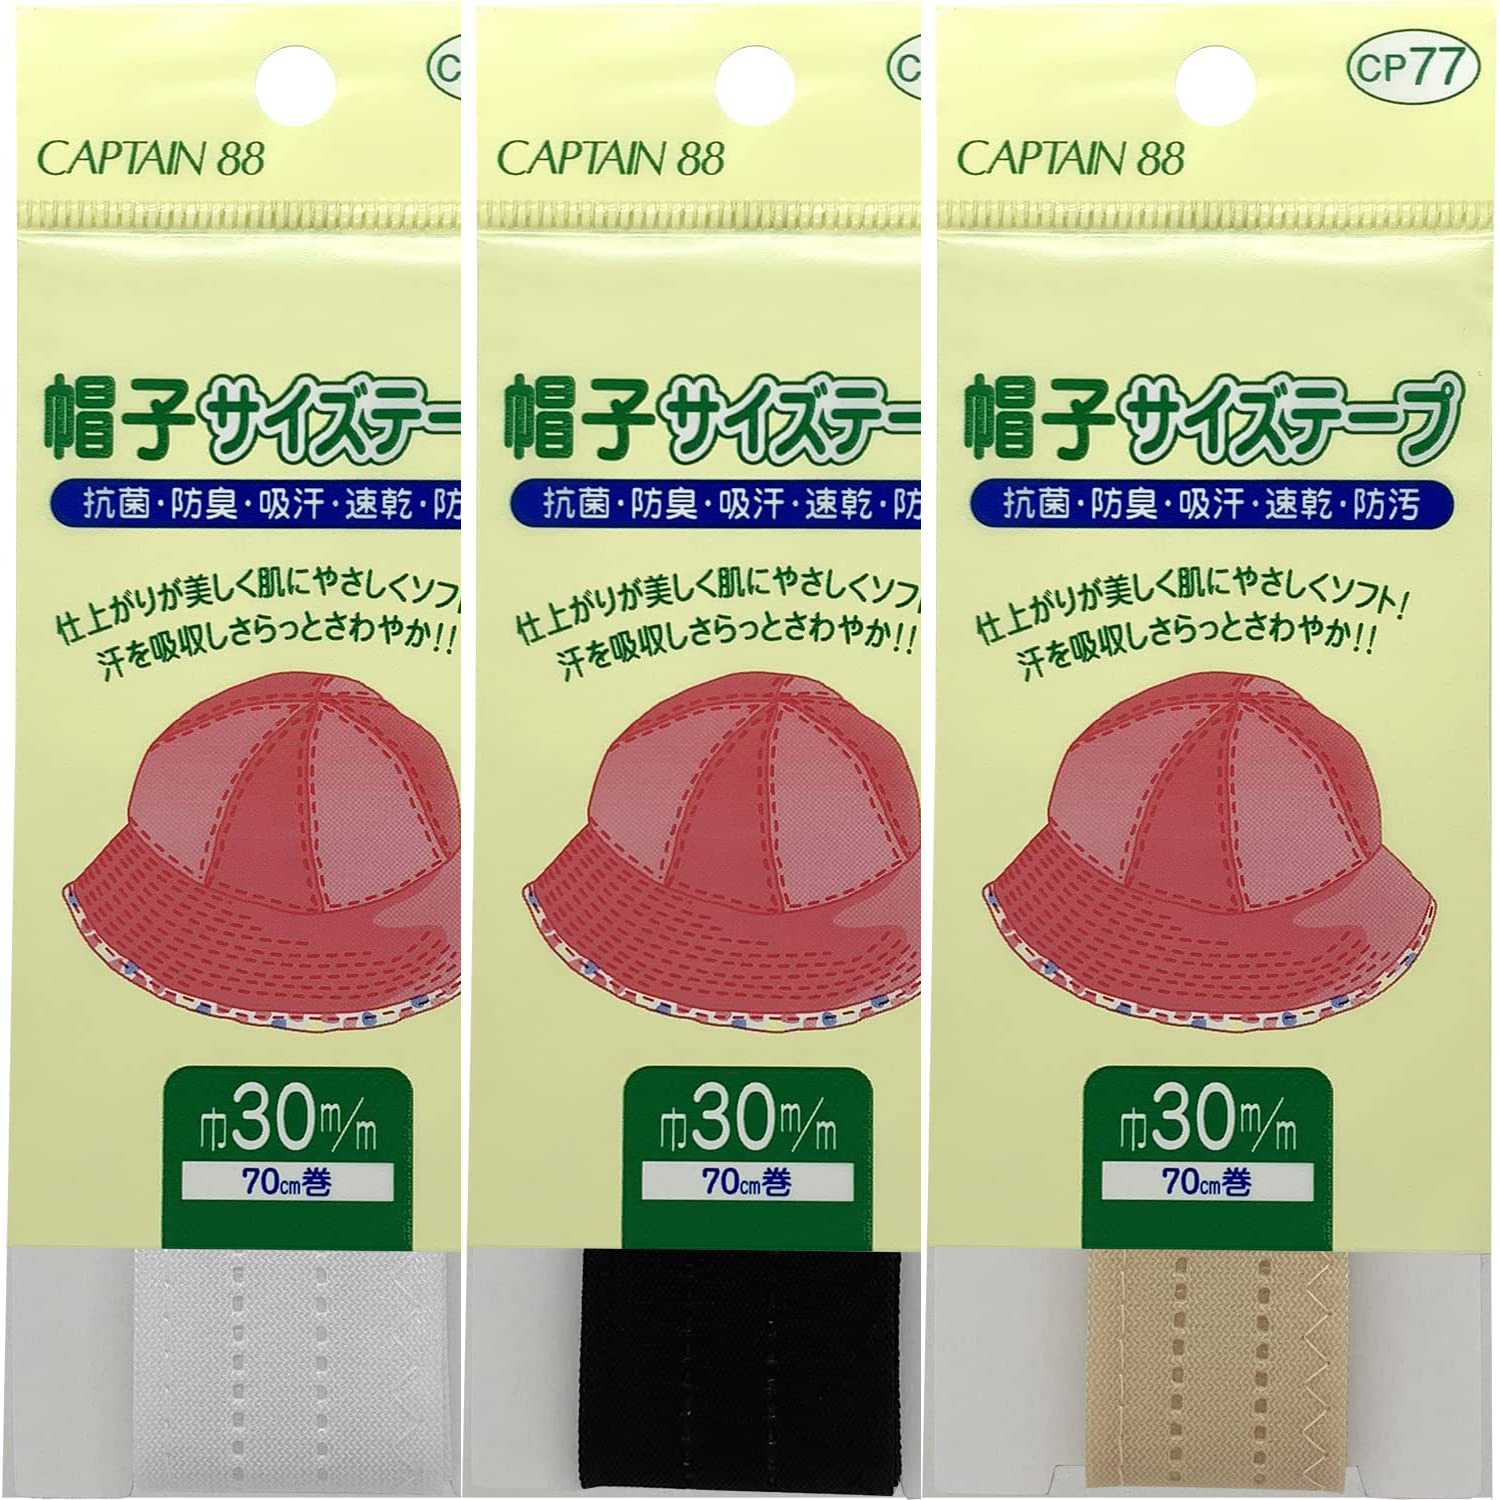 CP77 CAPTAIN Hat Size Tape 30mm Width 70cm Roll (pcs)